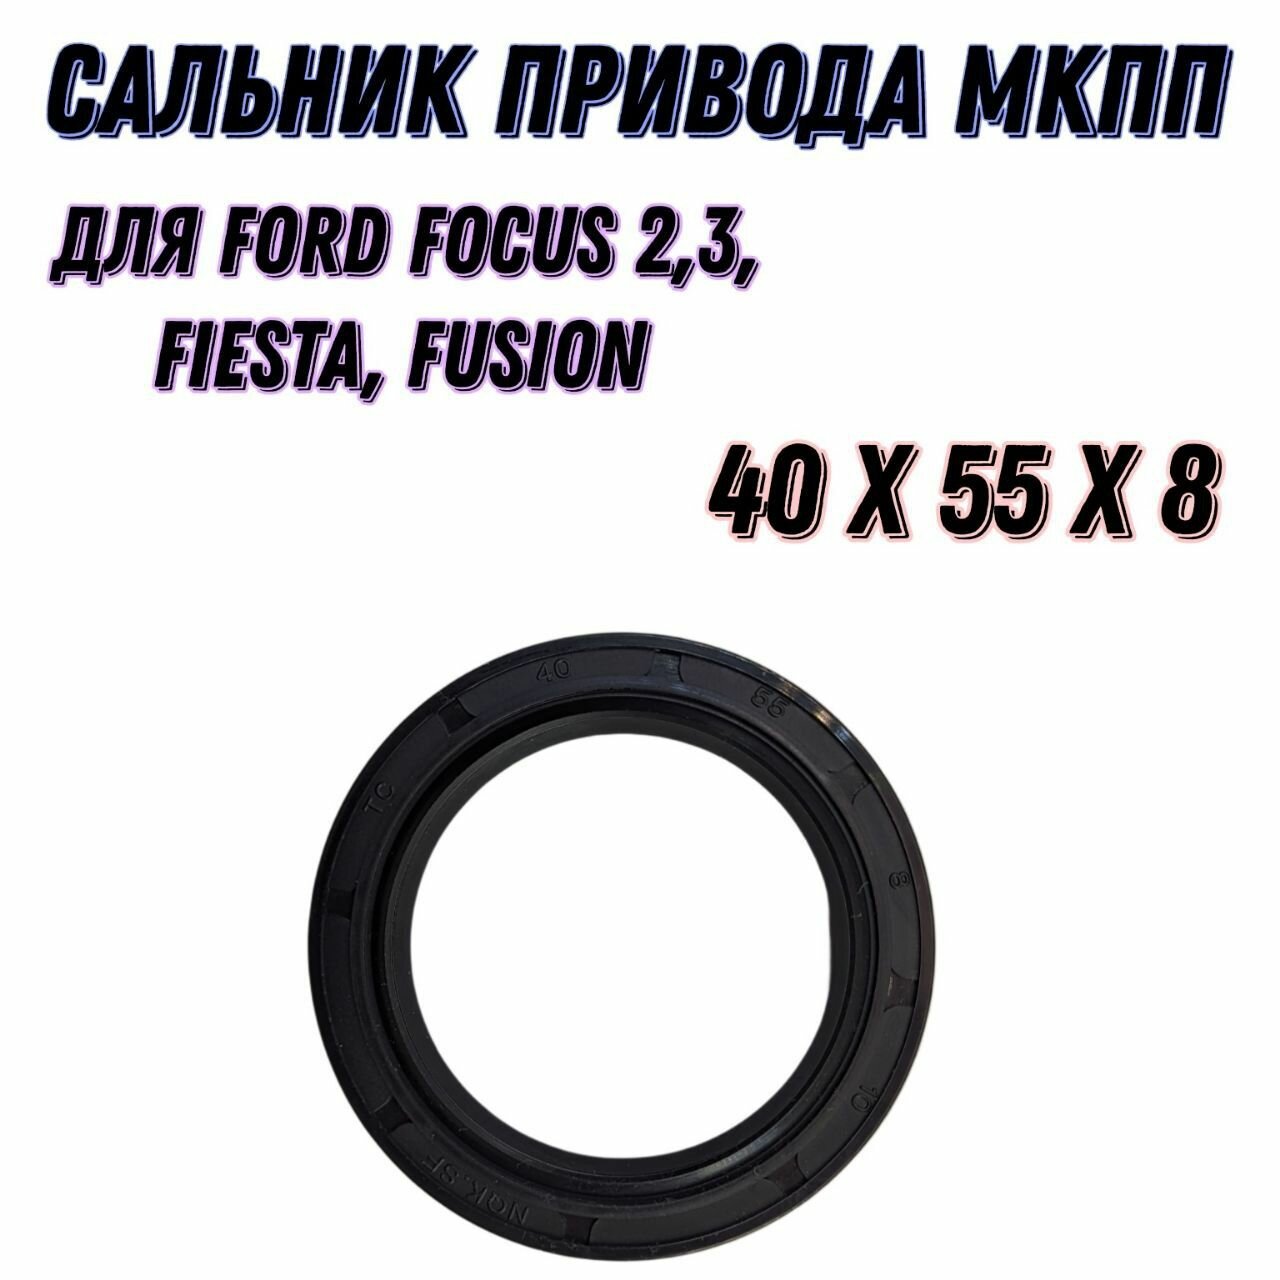 Сальник усиленный, для привода МКПП IB5 на Ford Focus-2,3 / Fusion / Fiesta / Размер (40*55*8)